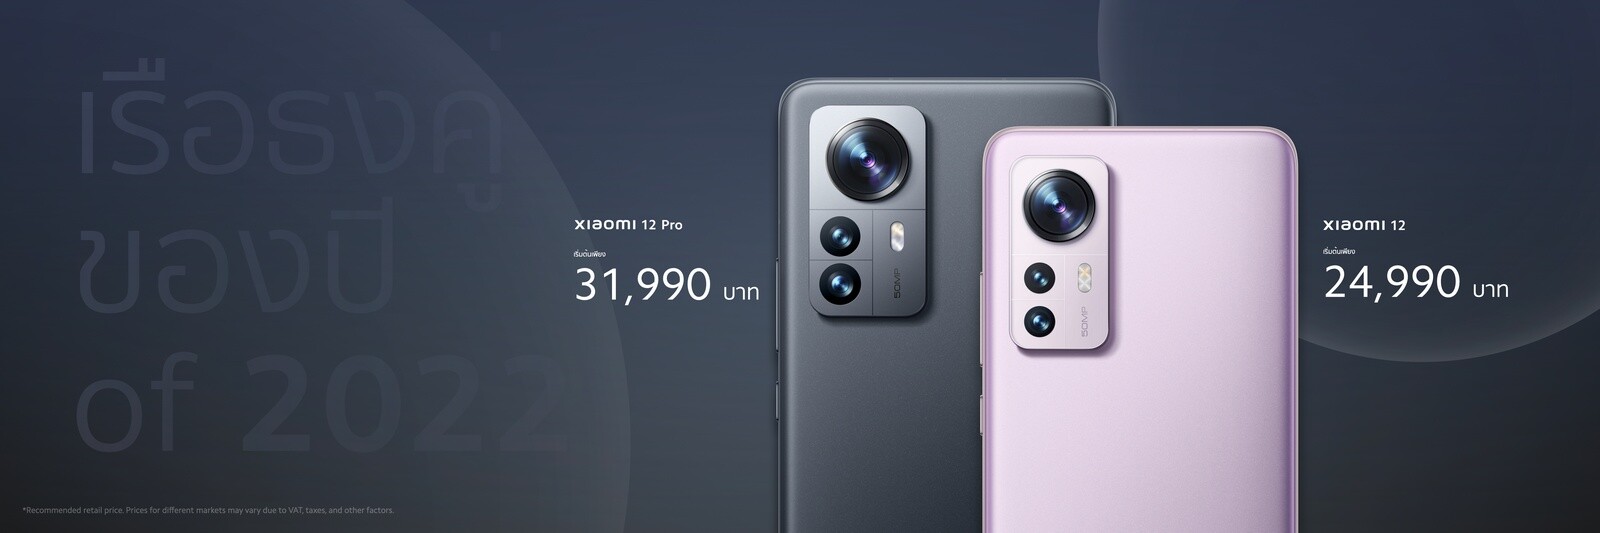 เสียวหมี่เปิดตัว Xiaomi 12 Series นิยามใหม่แห่งสมาร์ทโฟนเรือธงด้วยคอนเซ็ปต์ Master every scene เคาะราคาเริ่มที่ 24,990 บาท